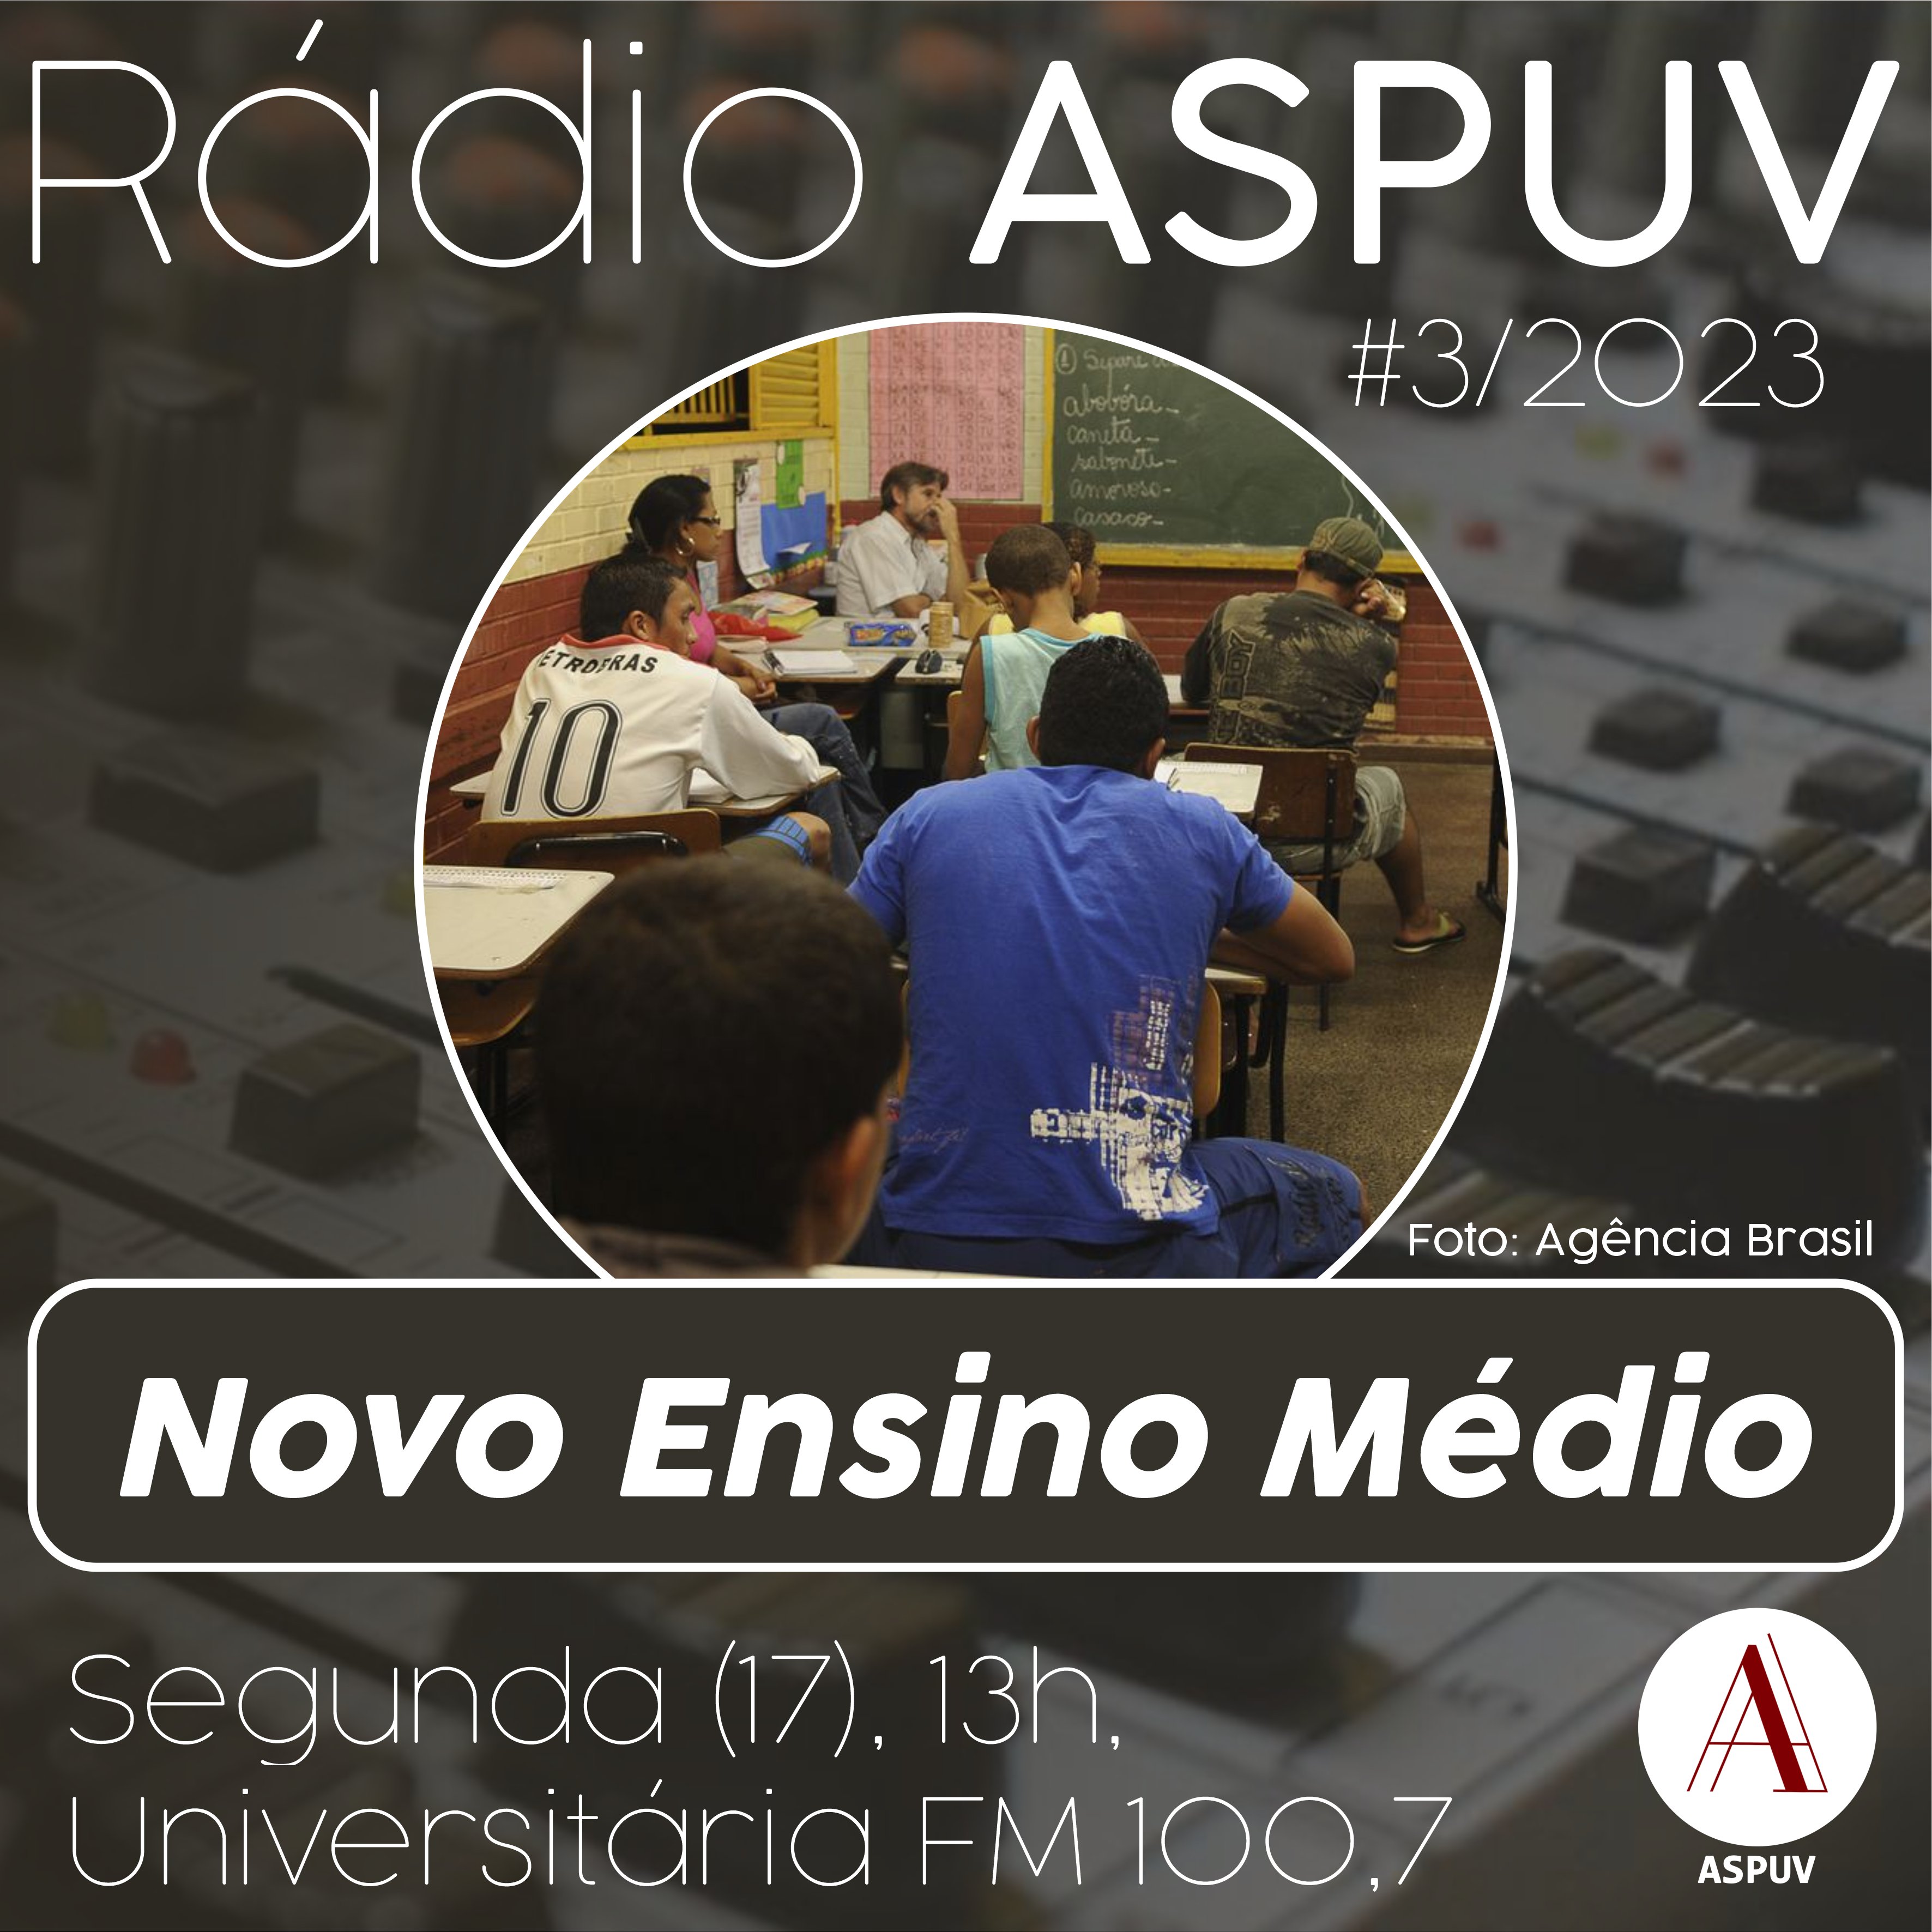 Rádio ASPUV #3/2023 – Novo Ensino Médio